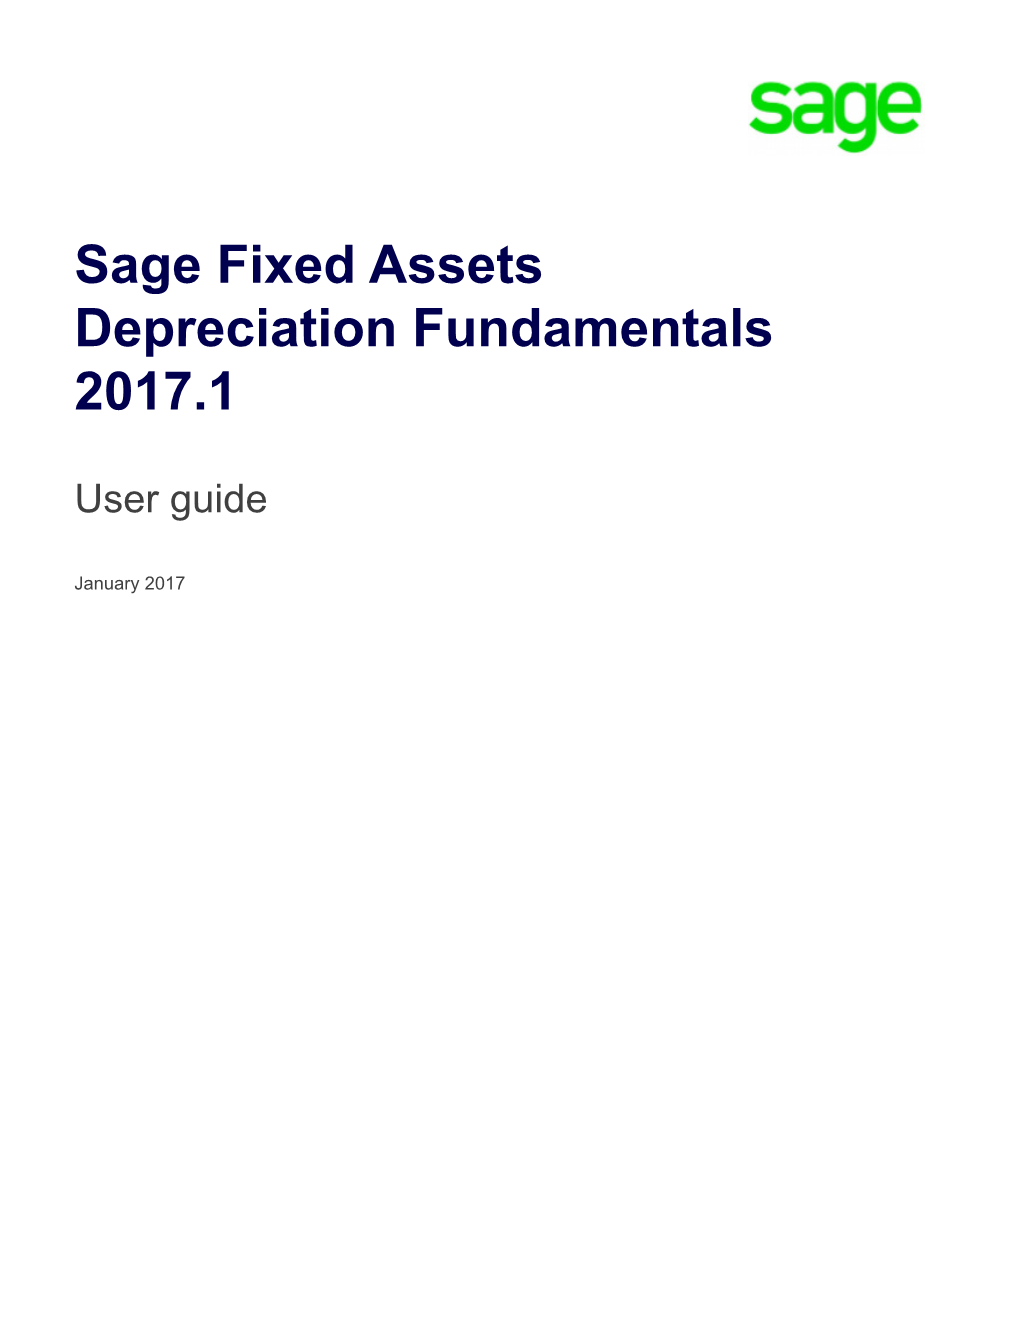 Sage Fixed Assets Depreciation Fundamentals 2017.1